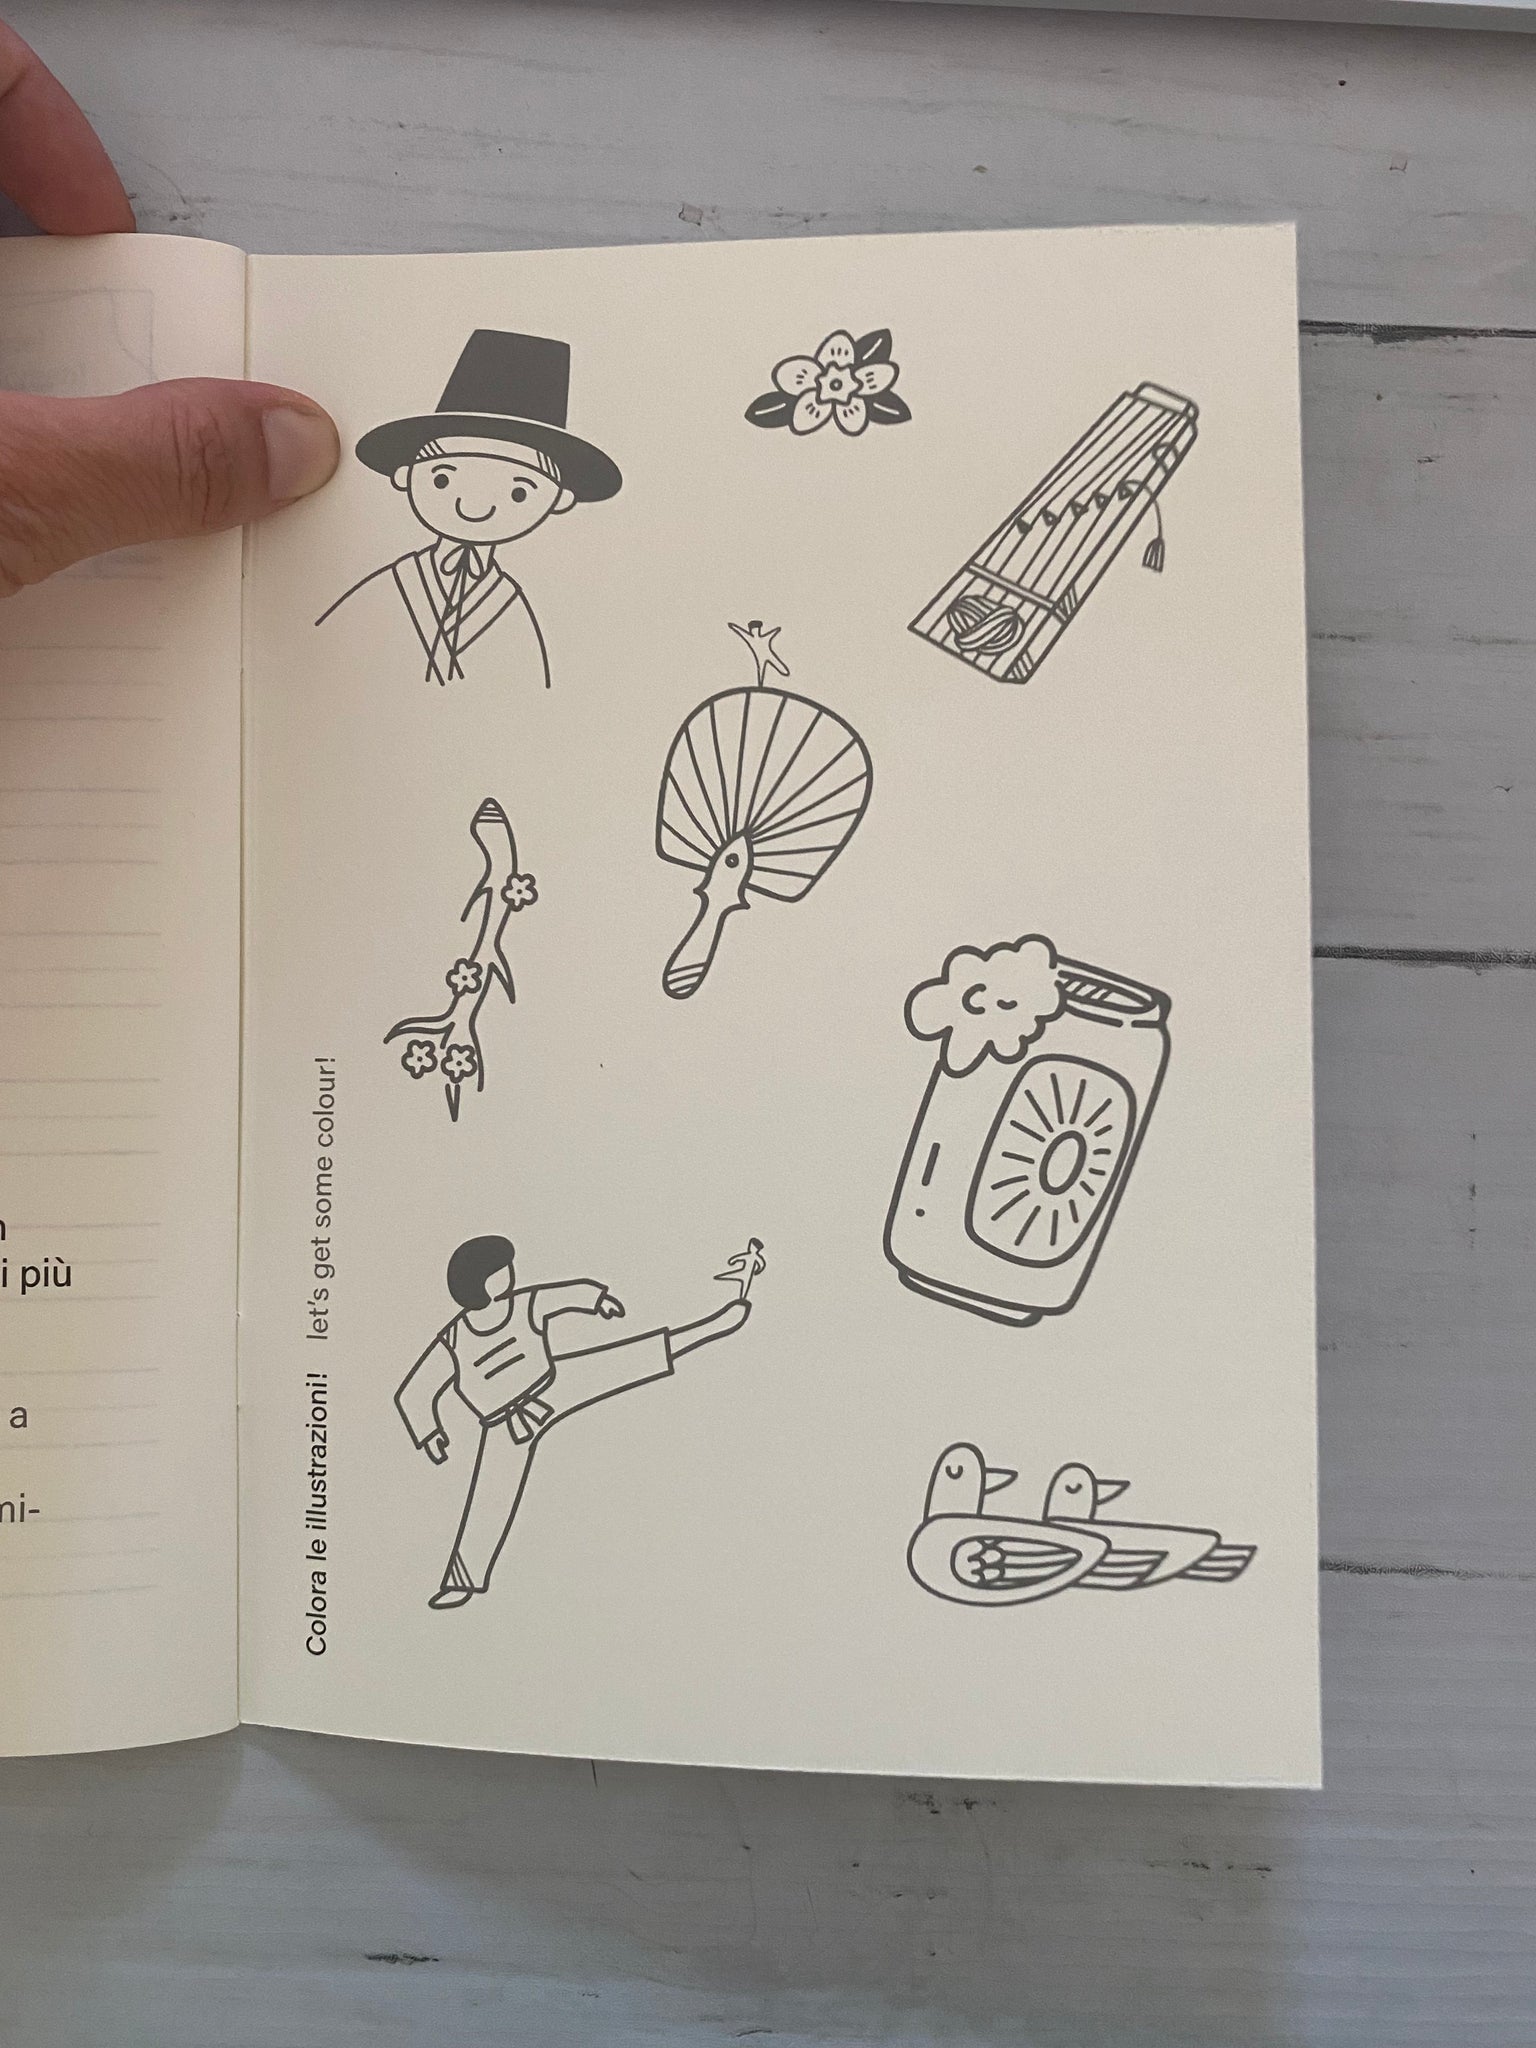 Notebook coreano - impara il coreano!